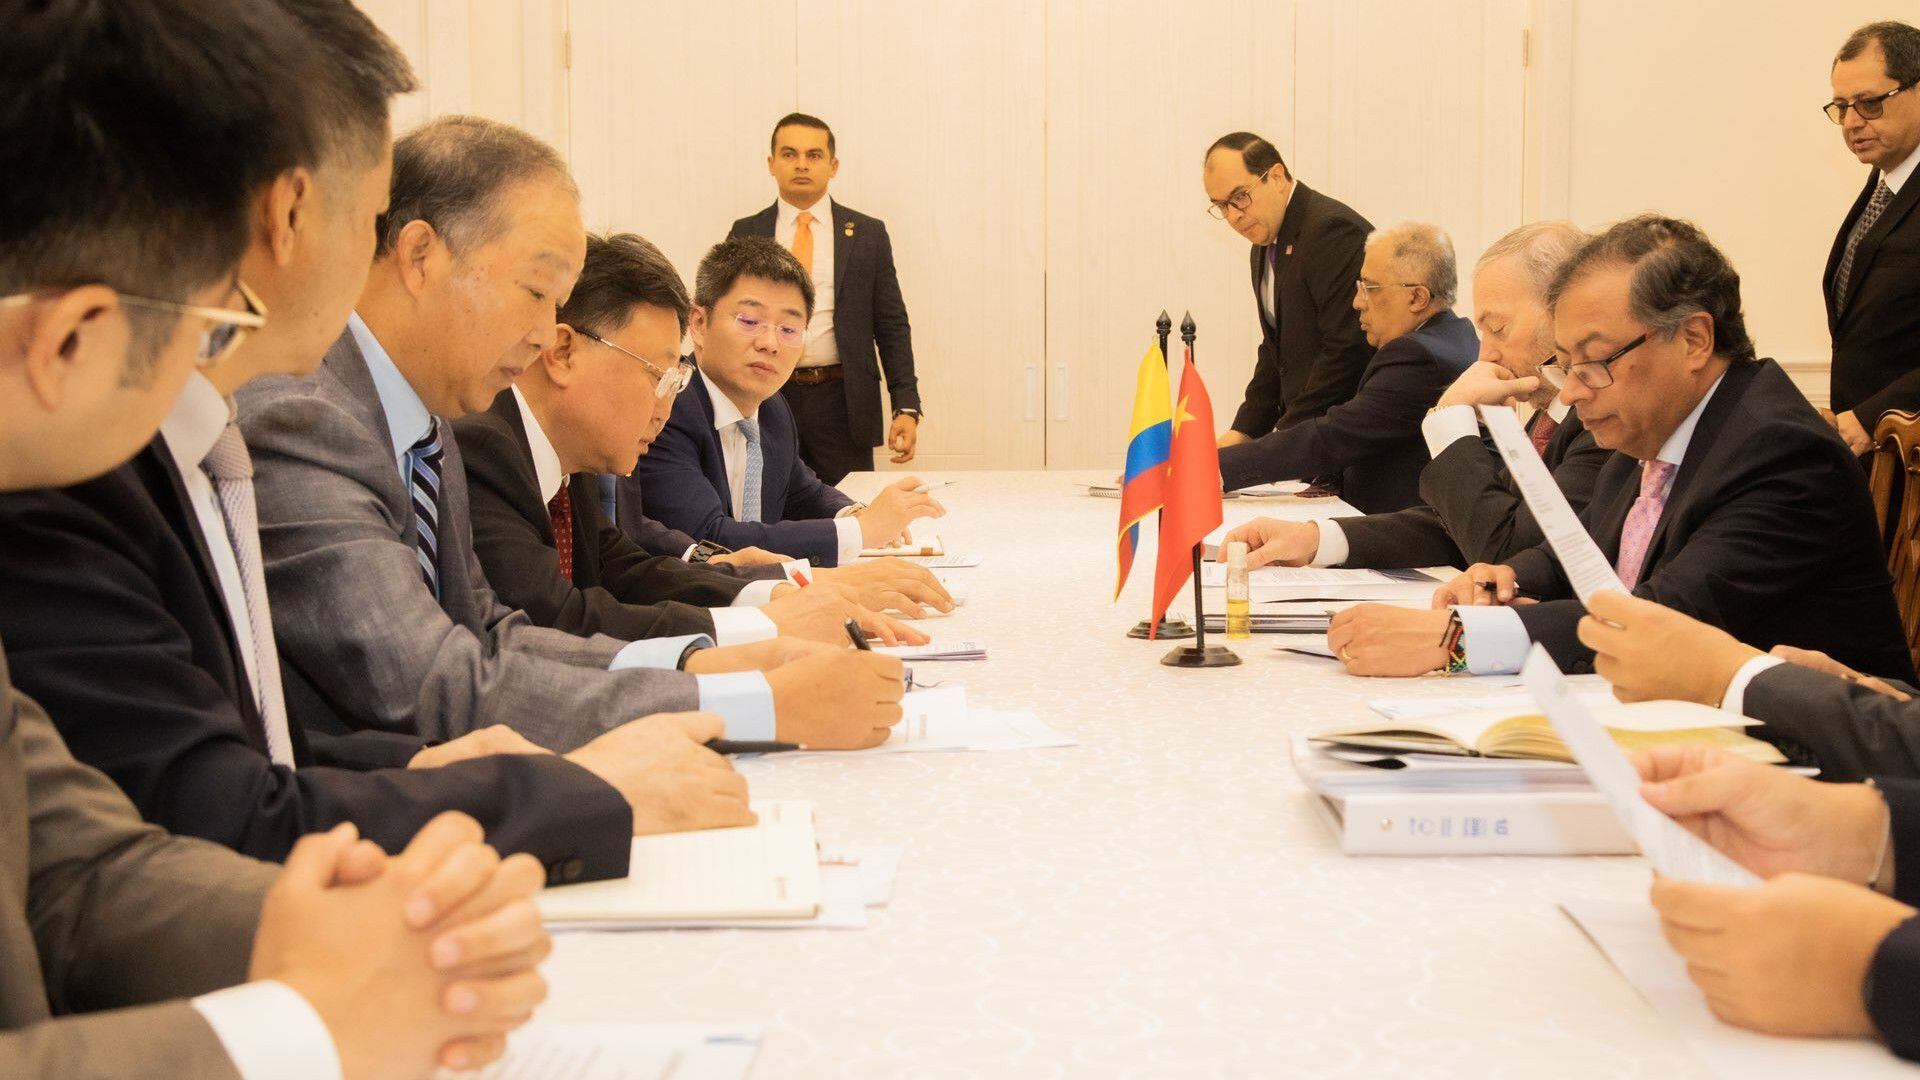 El presidente Petro busca el apoyo del régimen de la República Popular China para una ambiciosa propuesta de interconexión férrea en Colombia. (Presidencia de la República de Colombia)